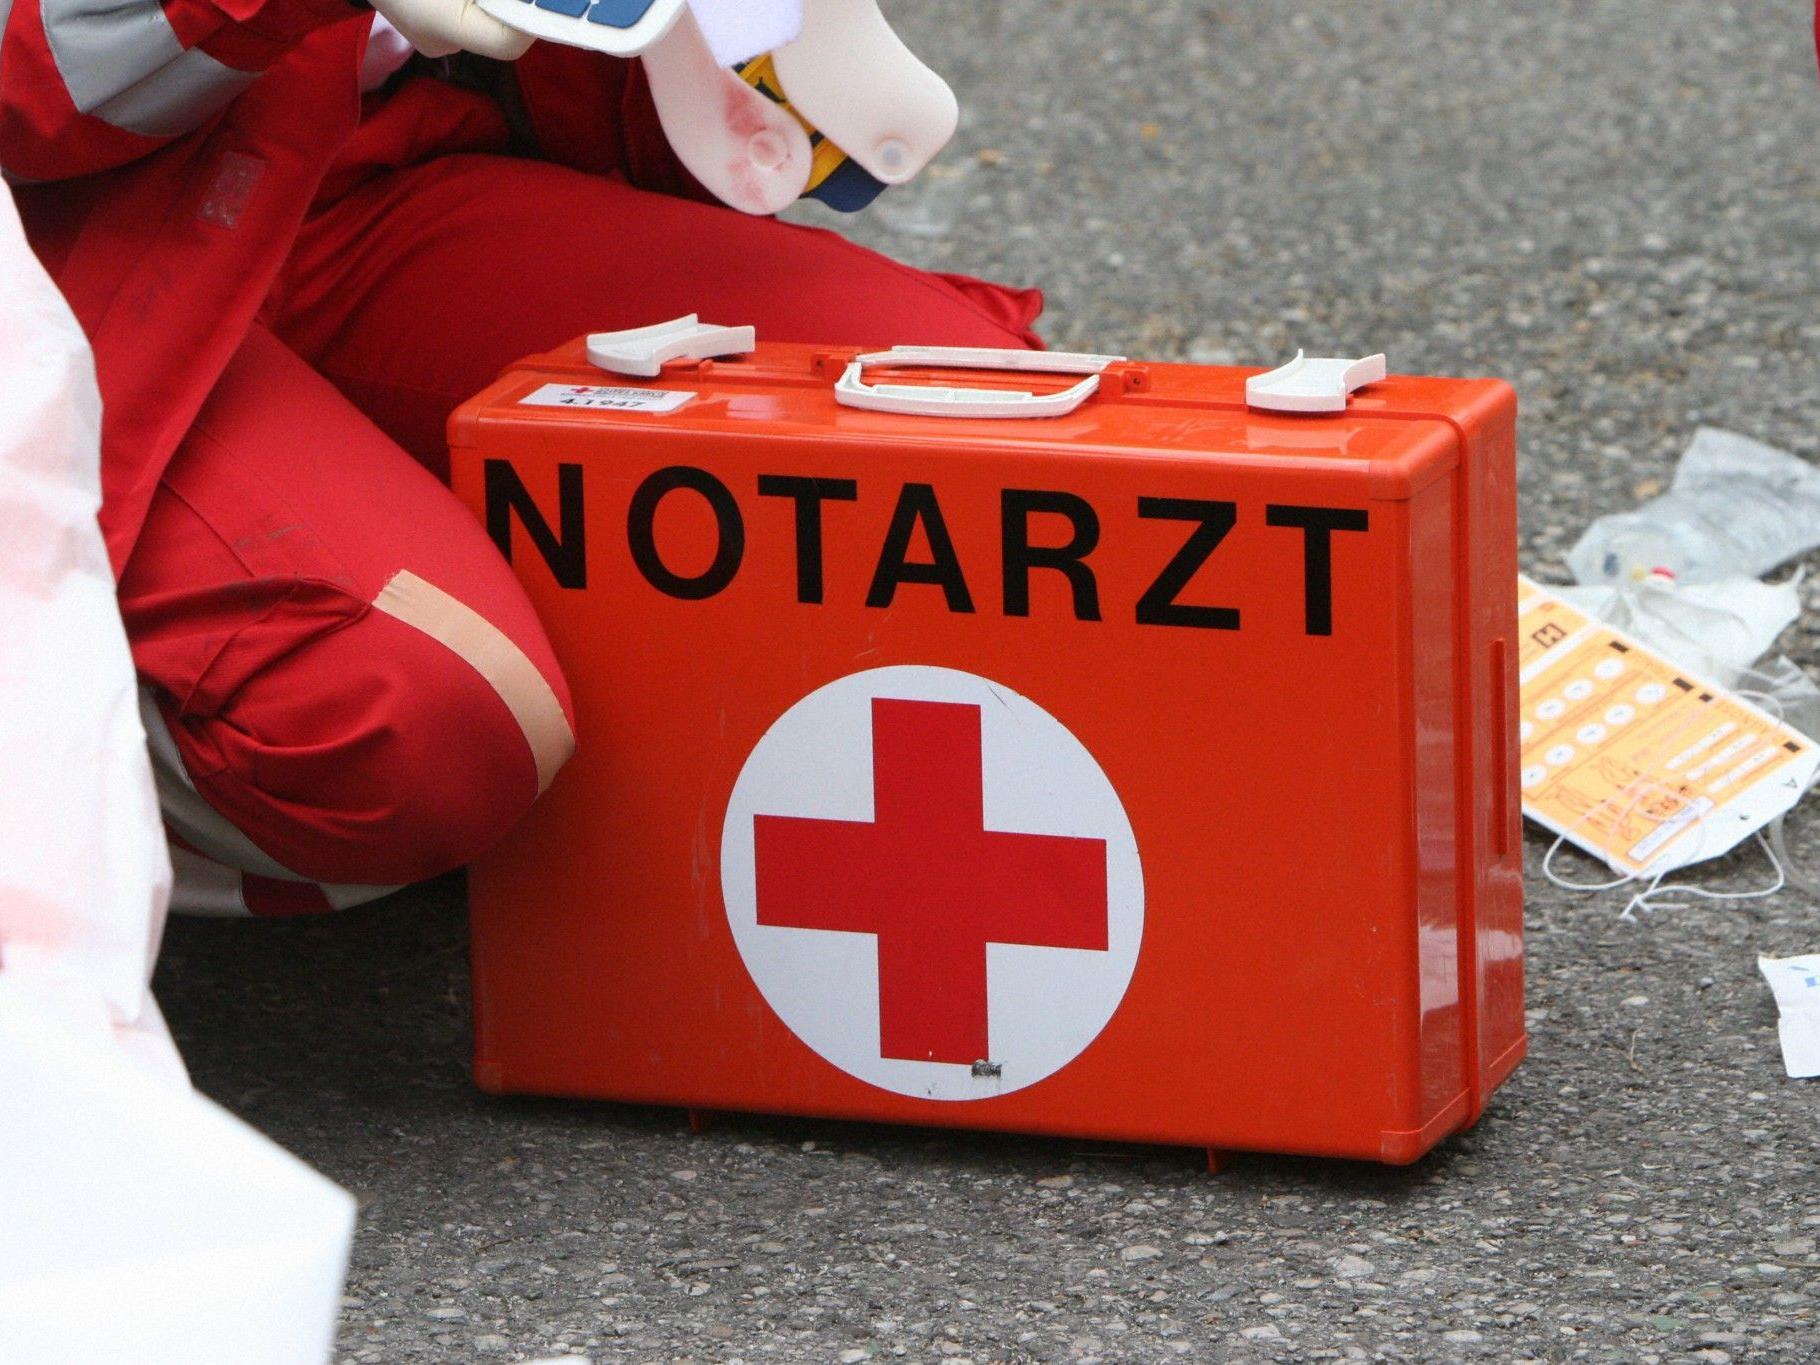 Der 23-järhige Fahrzeuglenker wurde mit Verletzungen unbestimmten Grades von der Rettung in das Krankenhaus Braunau am Inn eingeliefert.